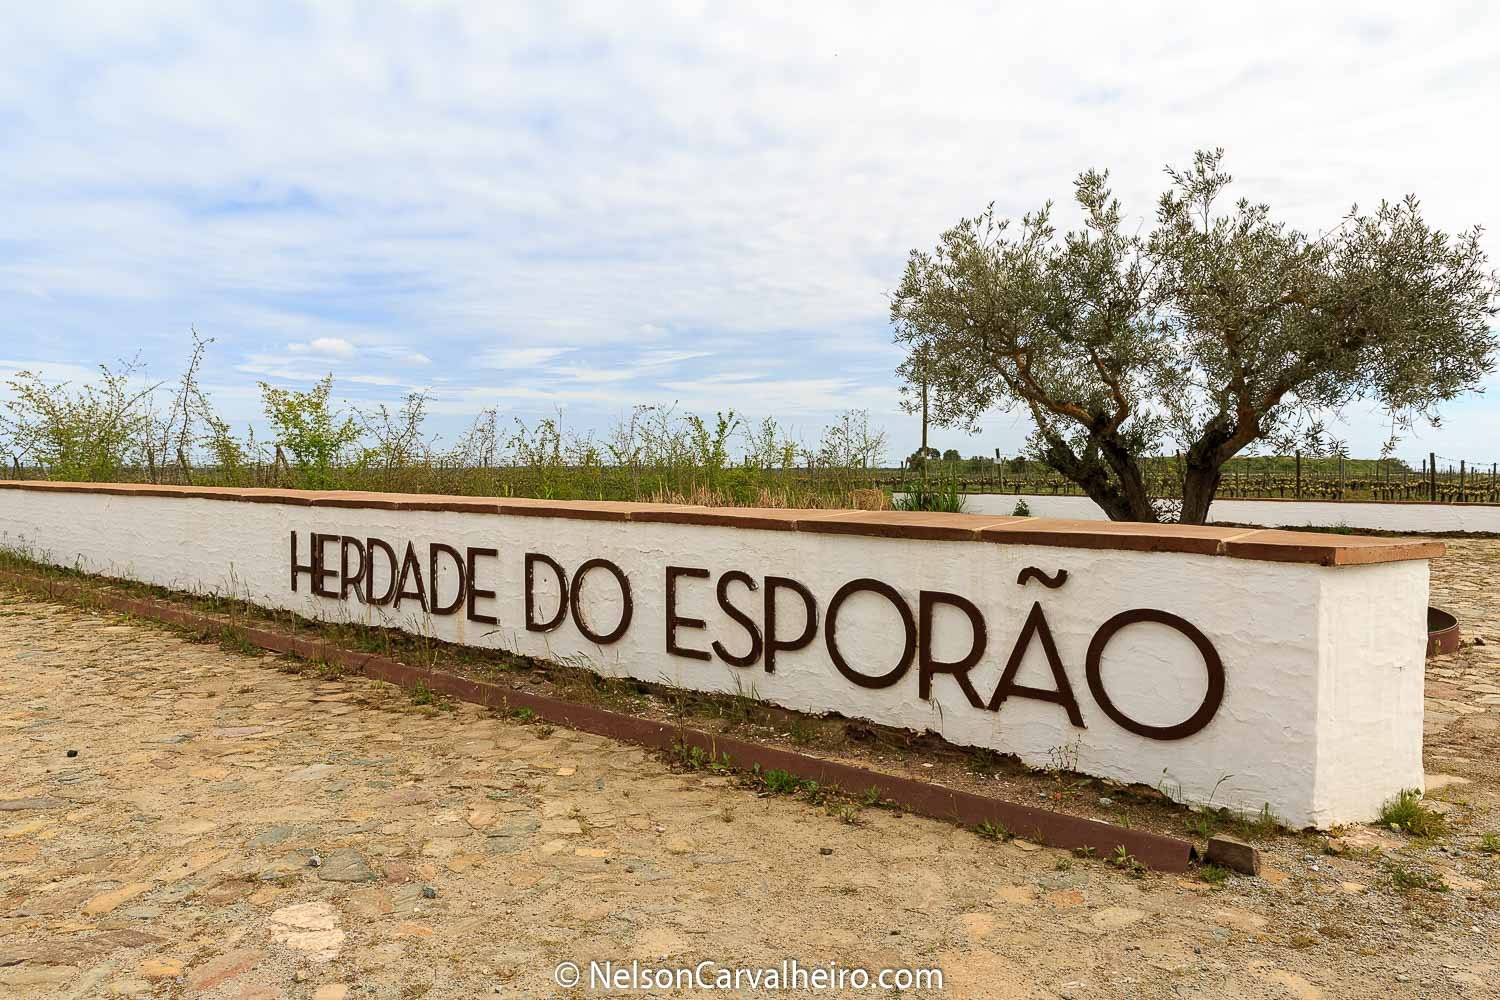 Nelson_Carvalheiro_Alentejo_Wine_Travel_Guide_Herdade_Esporão